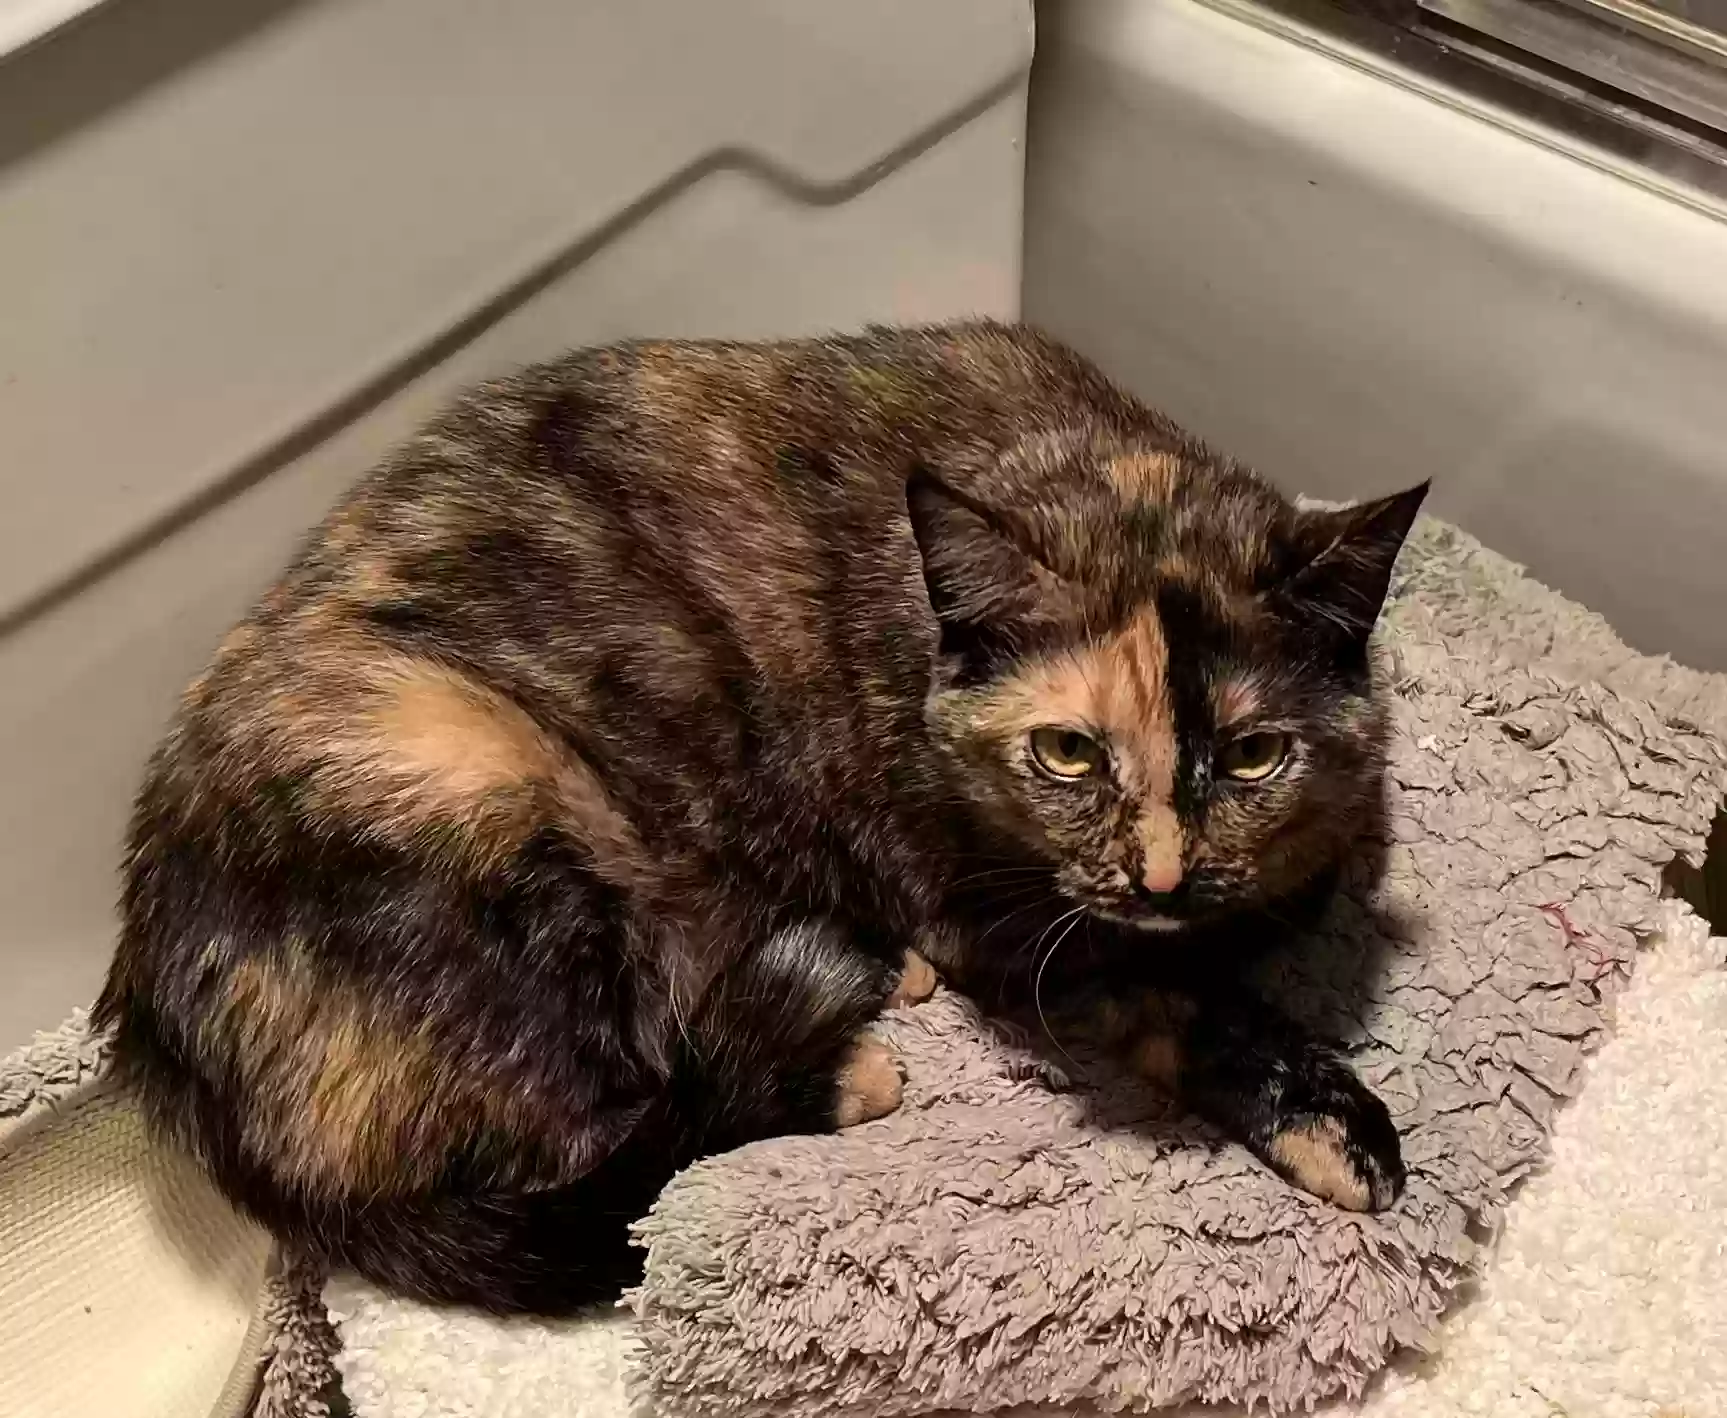 adoptable Cat in Birmingham,AL named Rosie